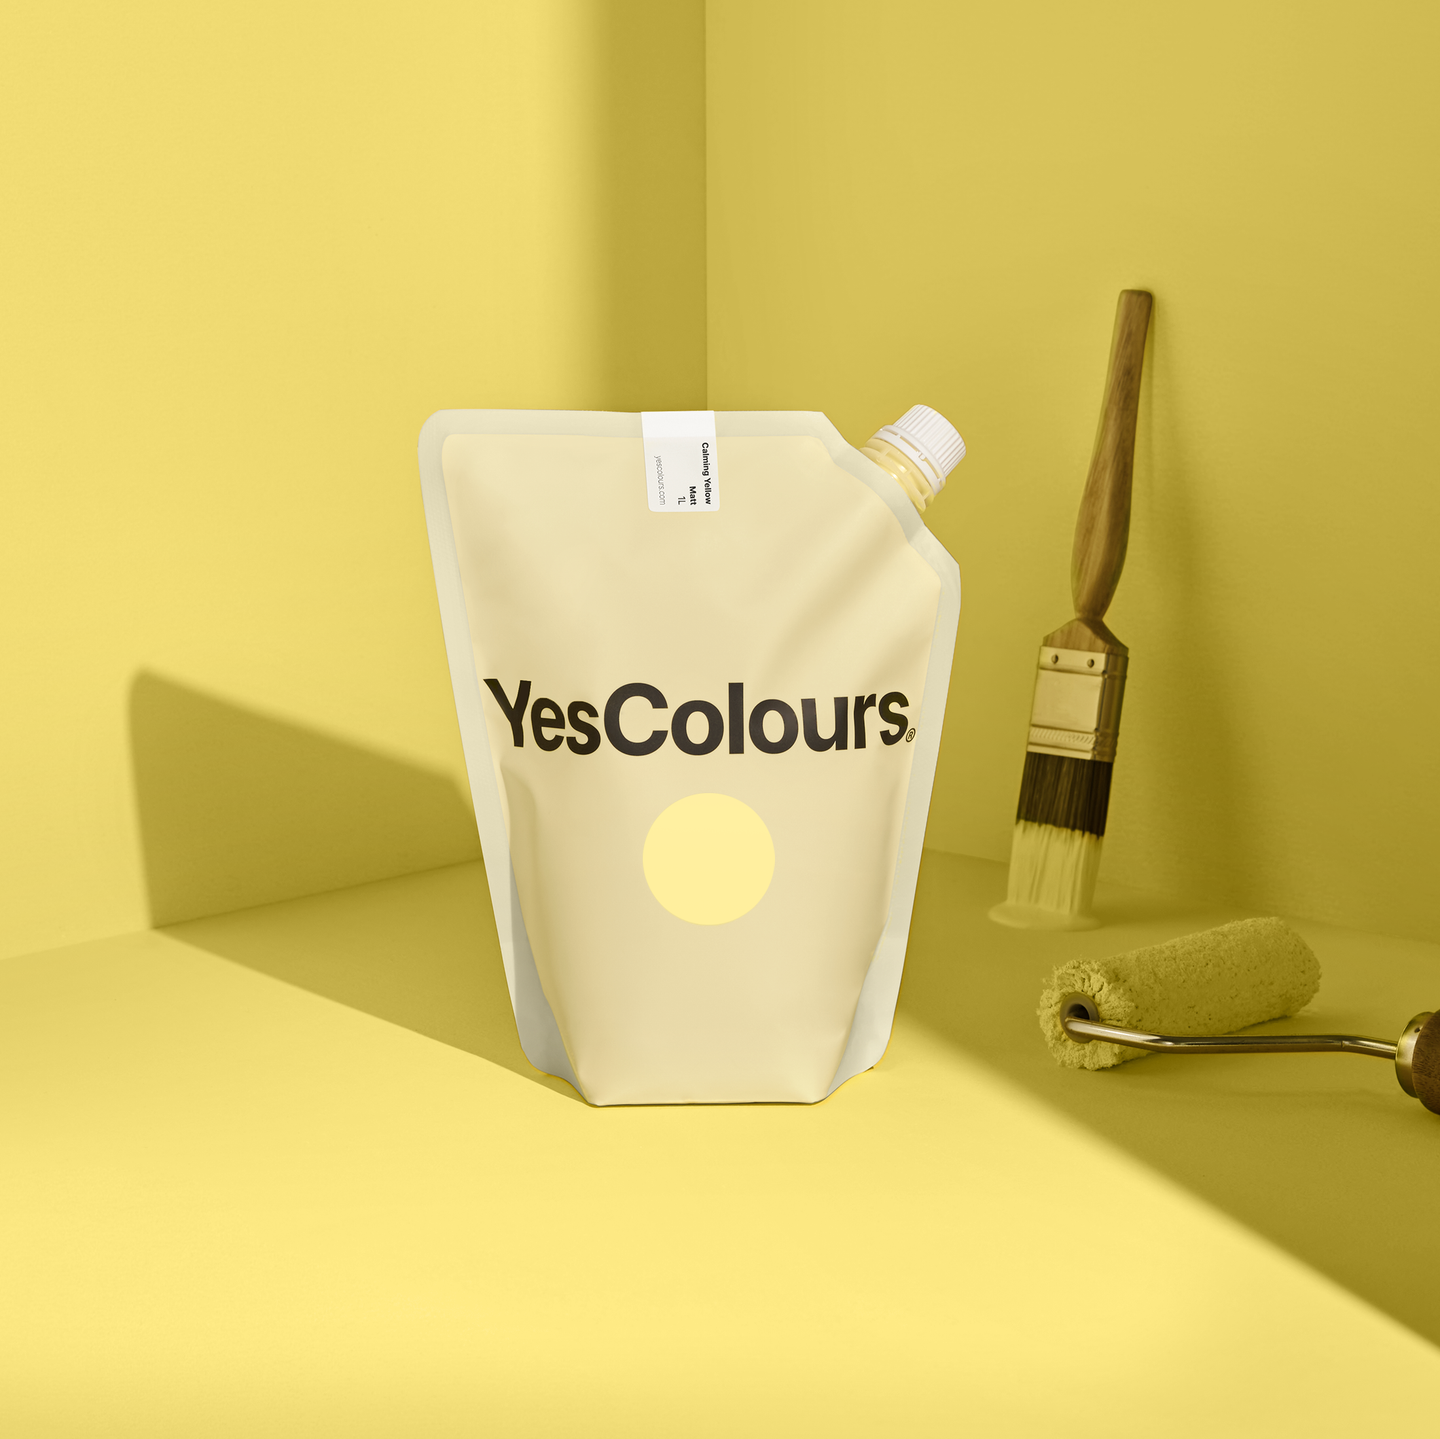 YesColours premium Calming Yellow matt emulsion paint Dulux paint, Coat Paint, Lick Paint